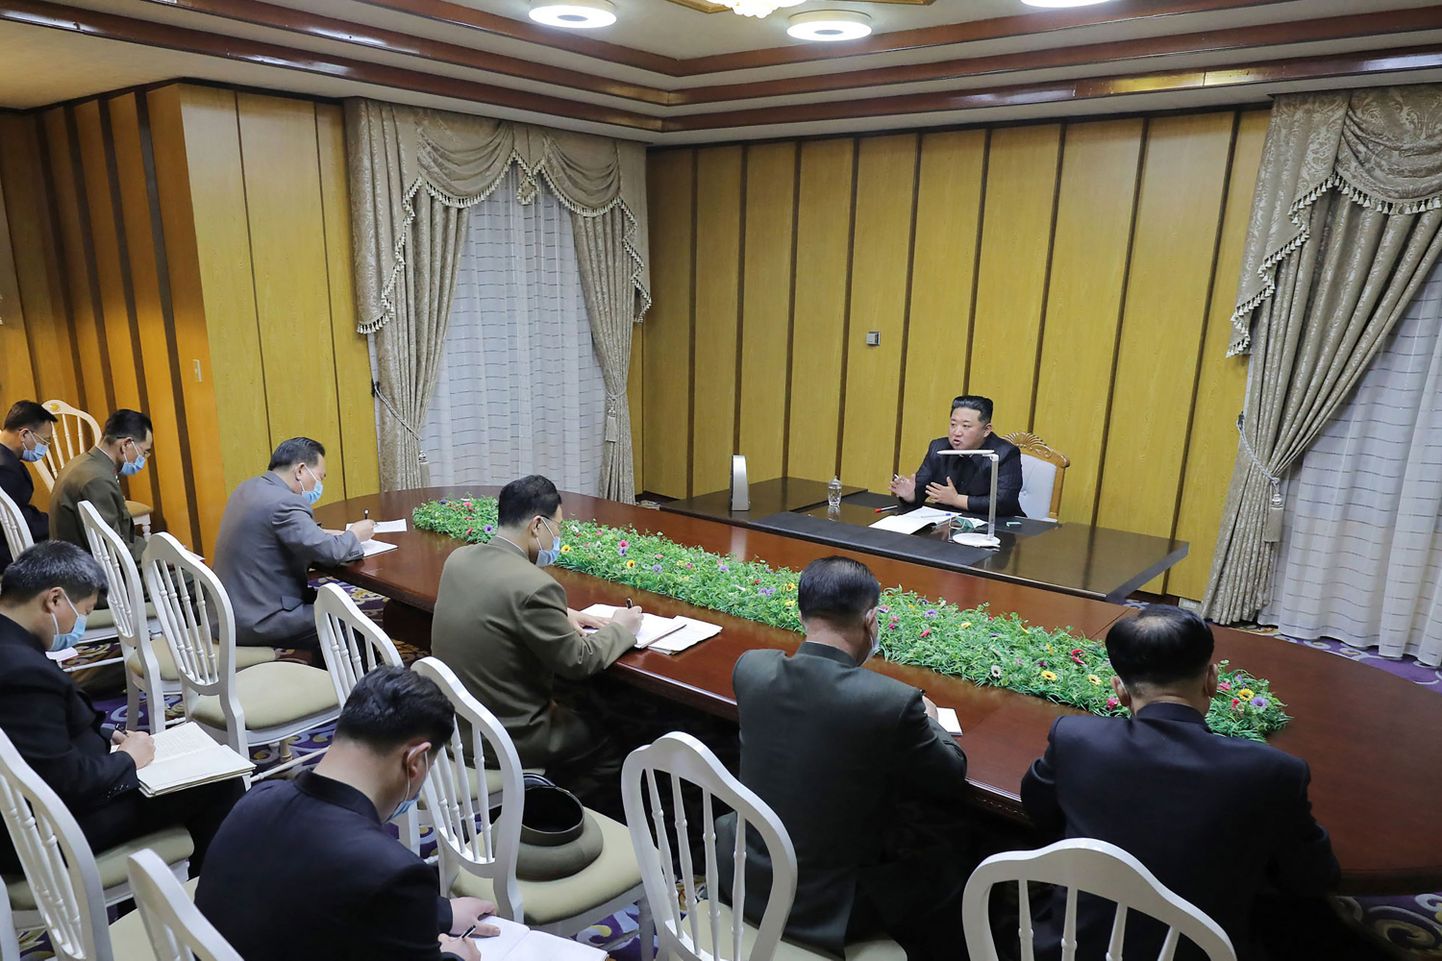 Põhja-Korea liider Kim Jong-un juhatab hädaolukorraga tegelevaid juhtivametnikke teadmata asupaigas.